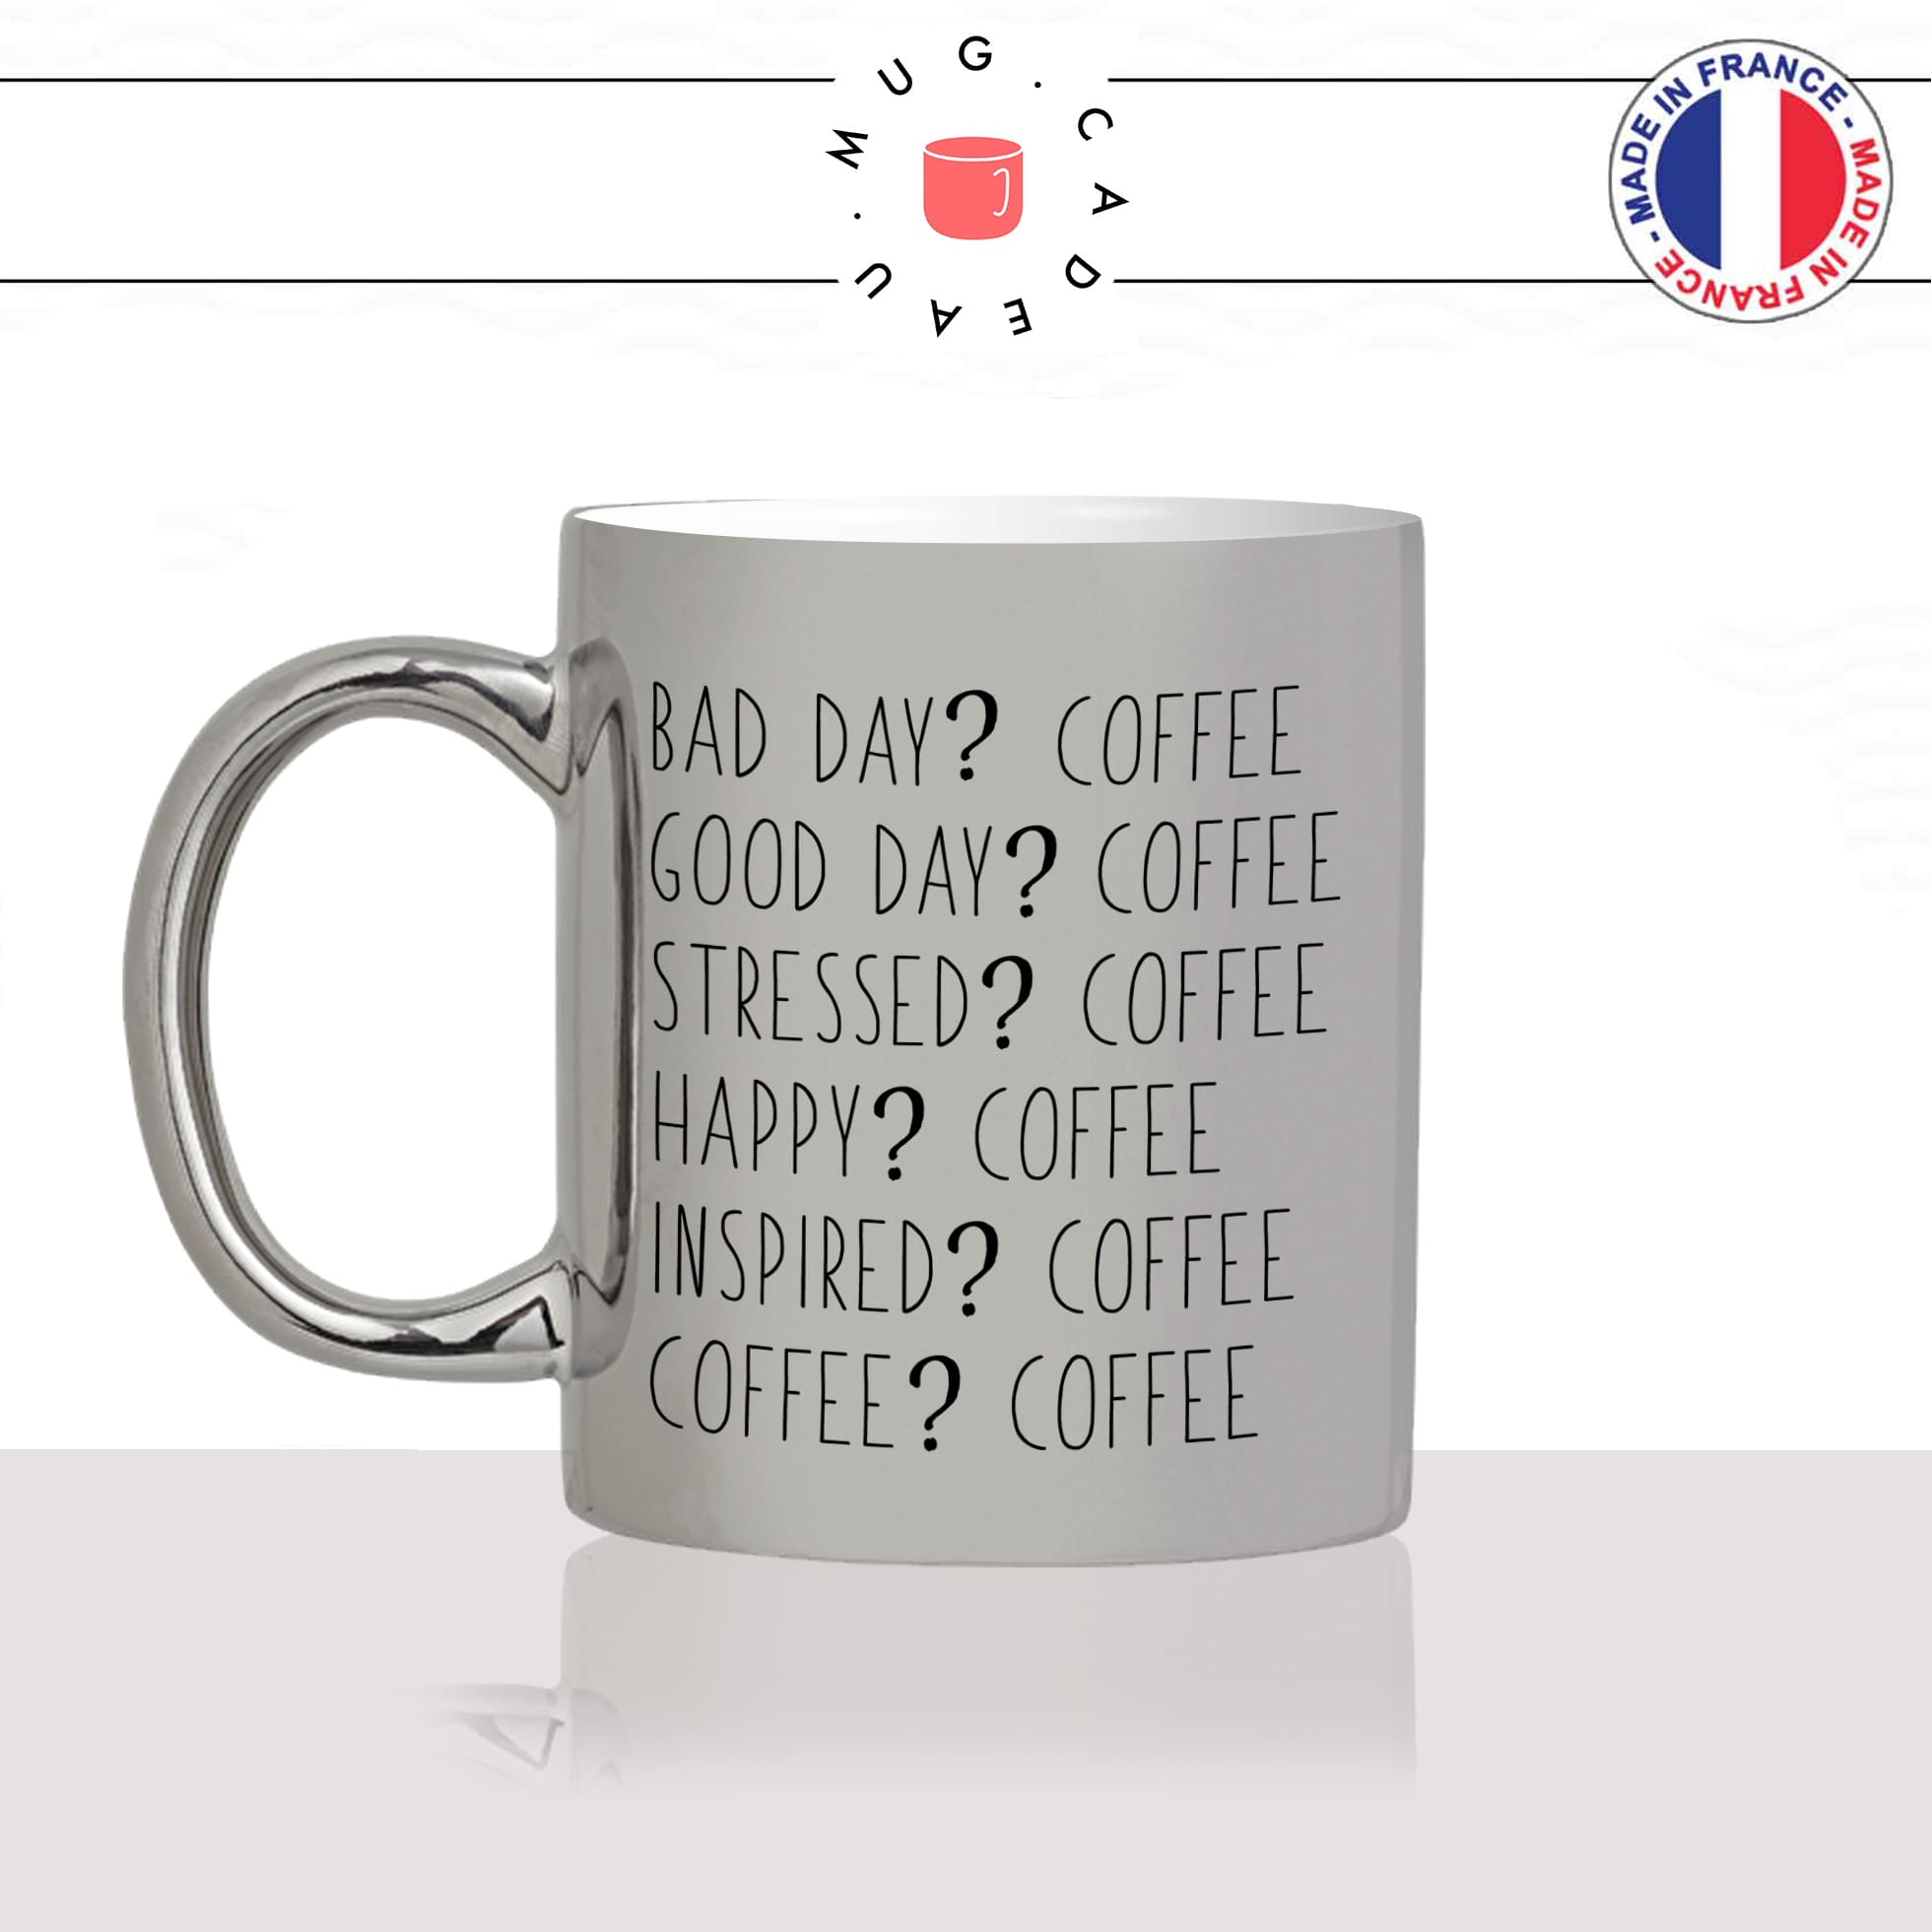 mug-tasse-silver-argenté-argent-bad-day-good-coffee-matin-reveil-collegue-travail-cool-humour-fun-idée-cadeau-personnalisé-café-thé-min